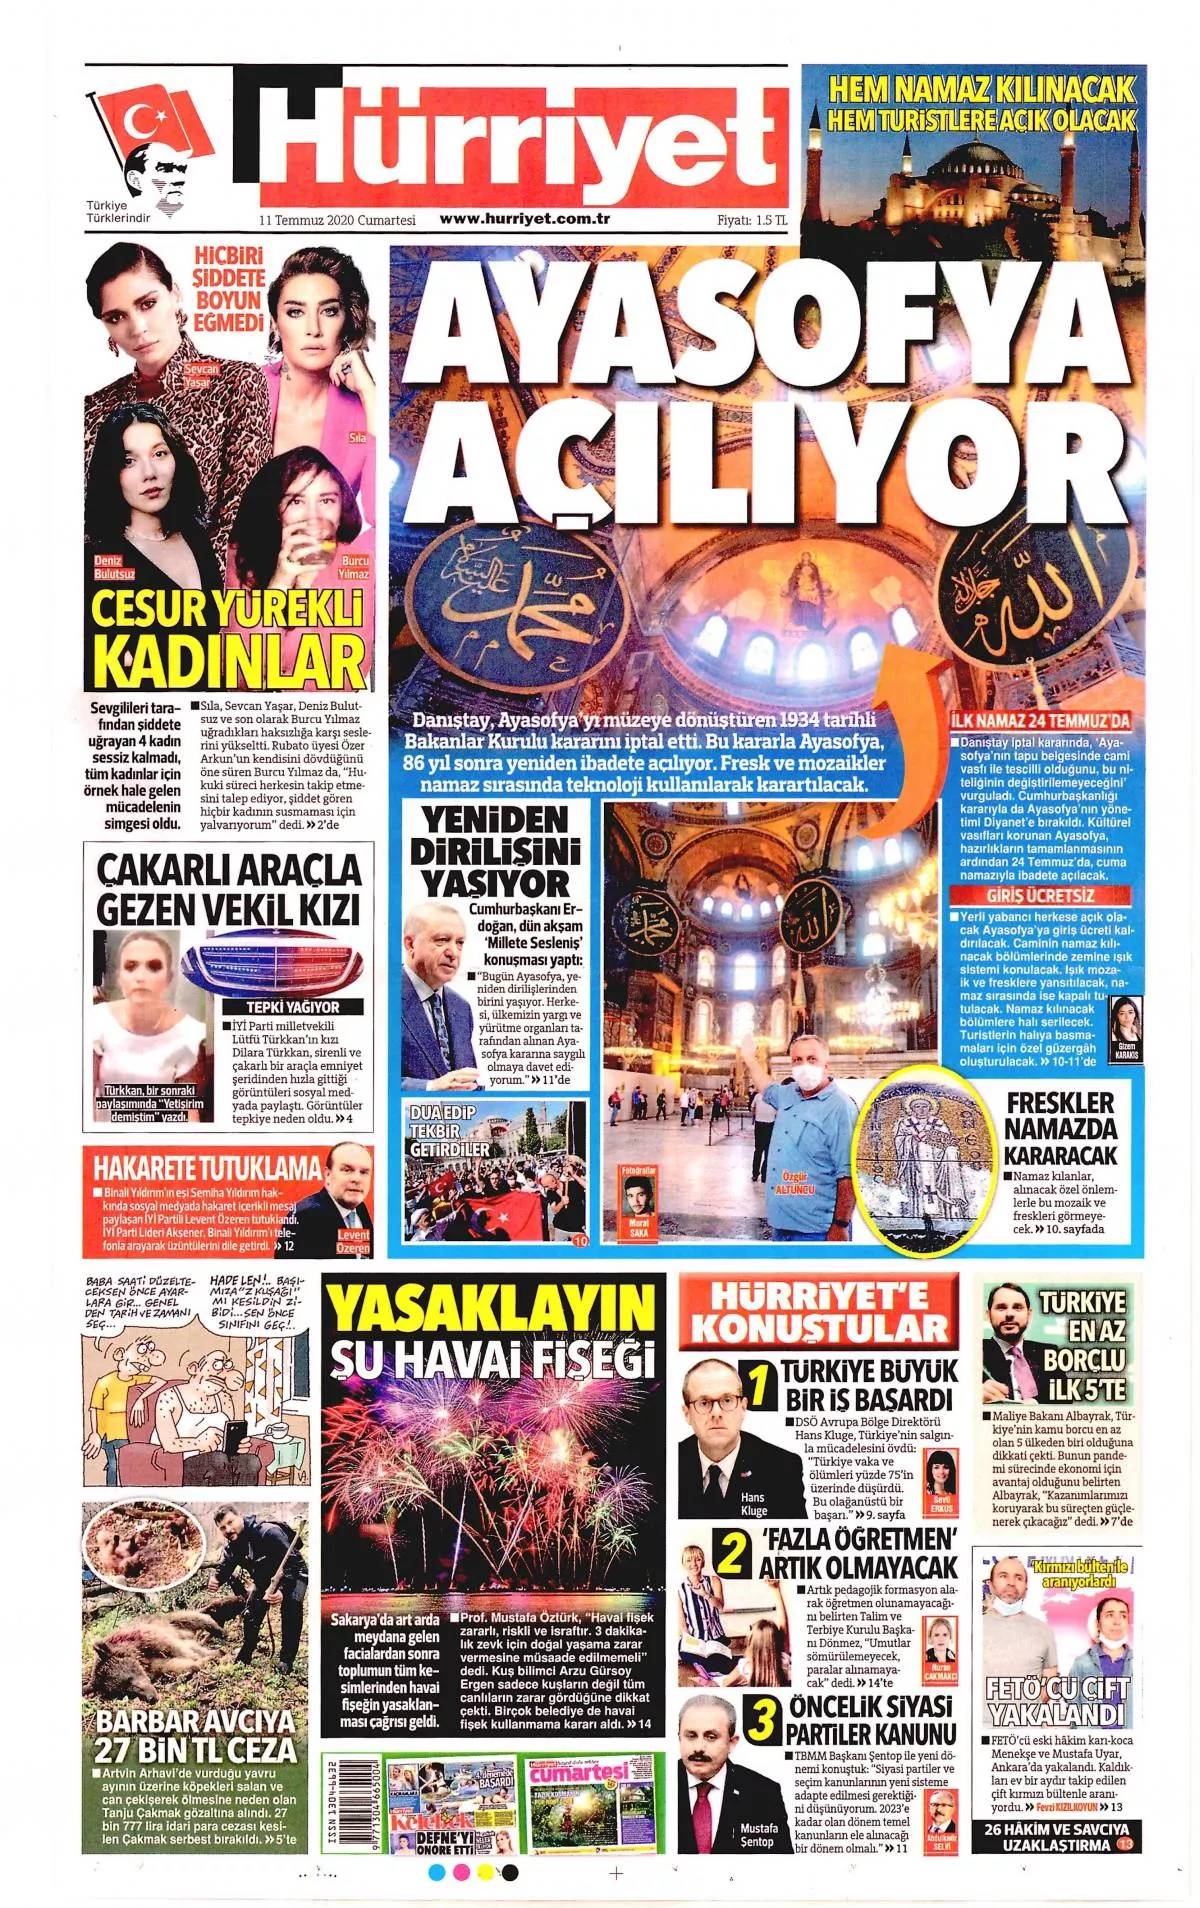 Αγία Σοφία: Οι Τούρκοι τής έβαλαν «λουκέτο» μέχρι να ανοίξει ως τζαμί - ΔΙΕΘΝΗ